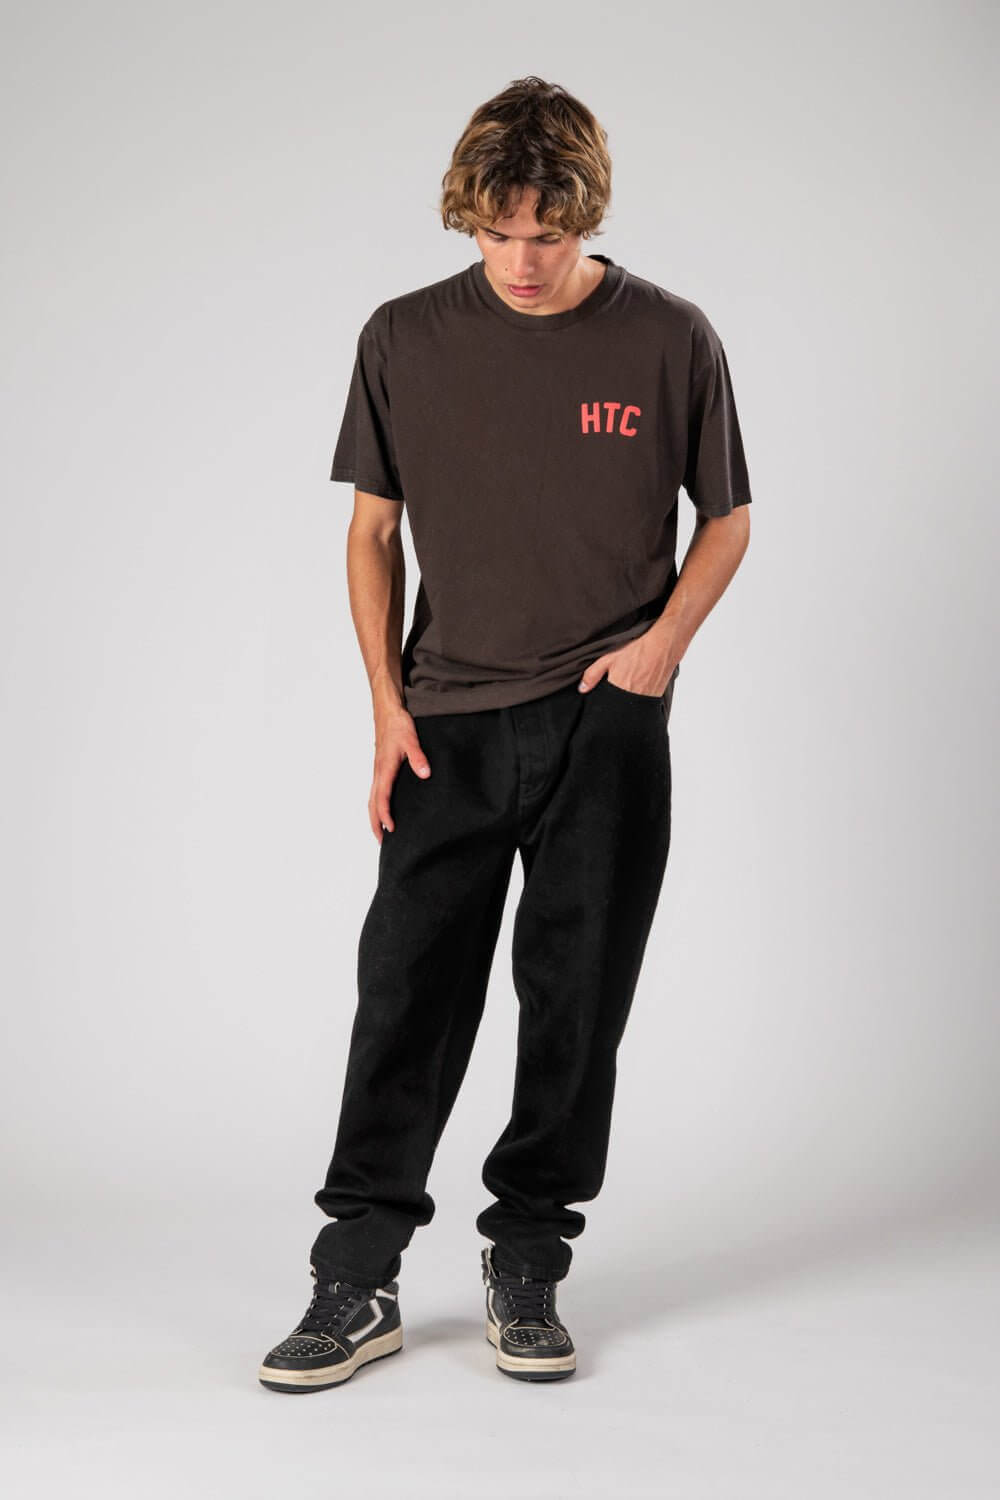 BLACK REBELS T-SHIRT Reguar fit printed t-shirt. 100% cotton HTC LOS ANGELES